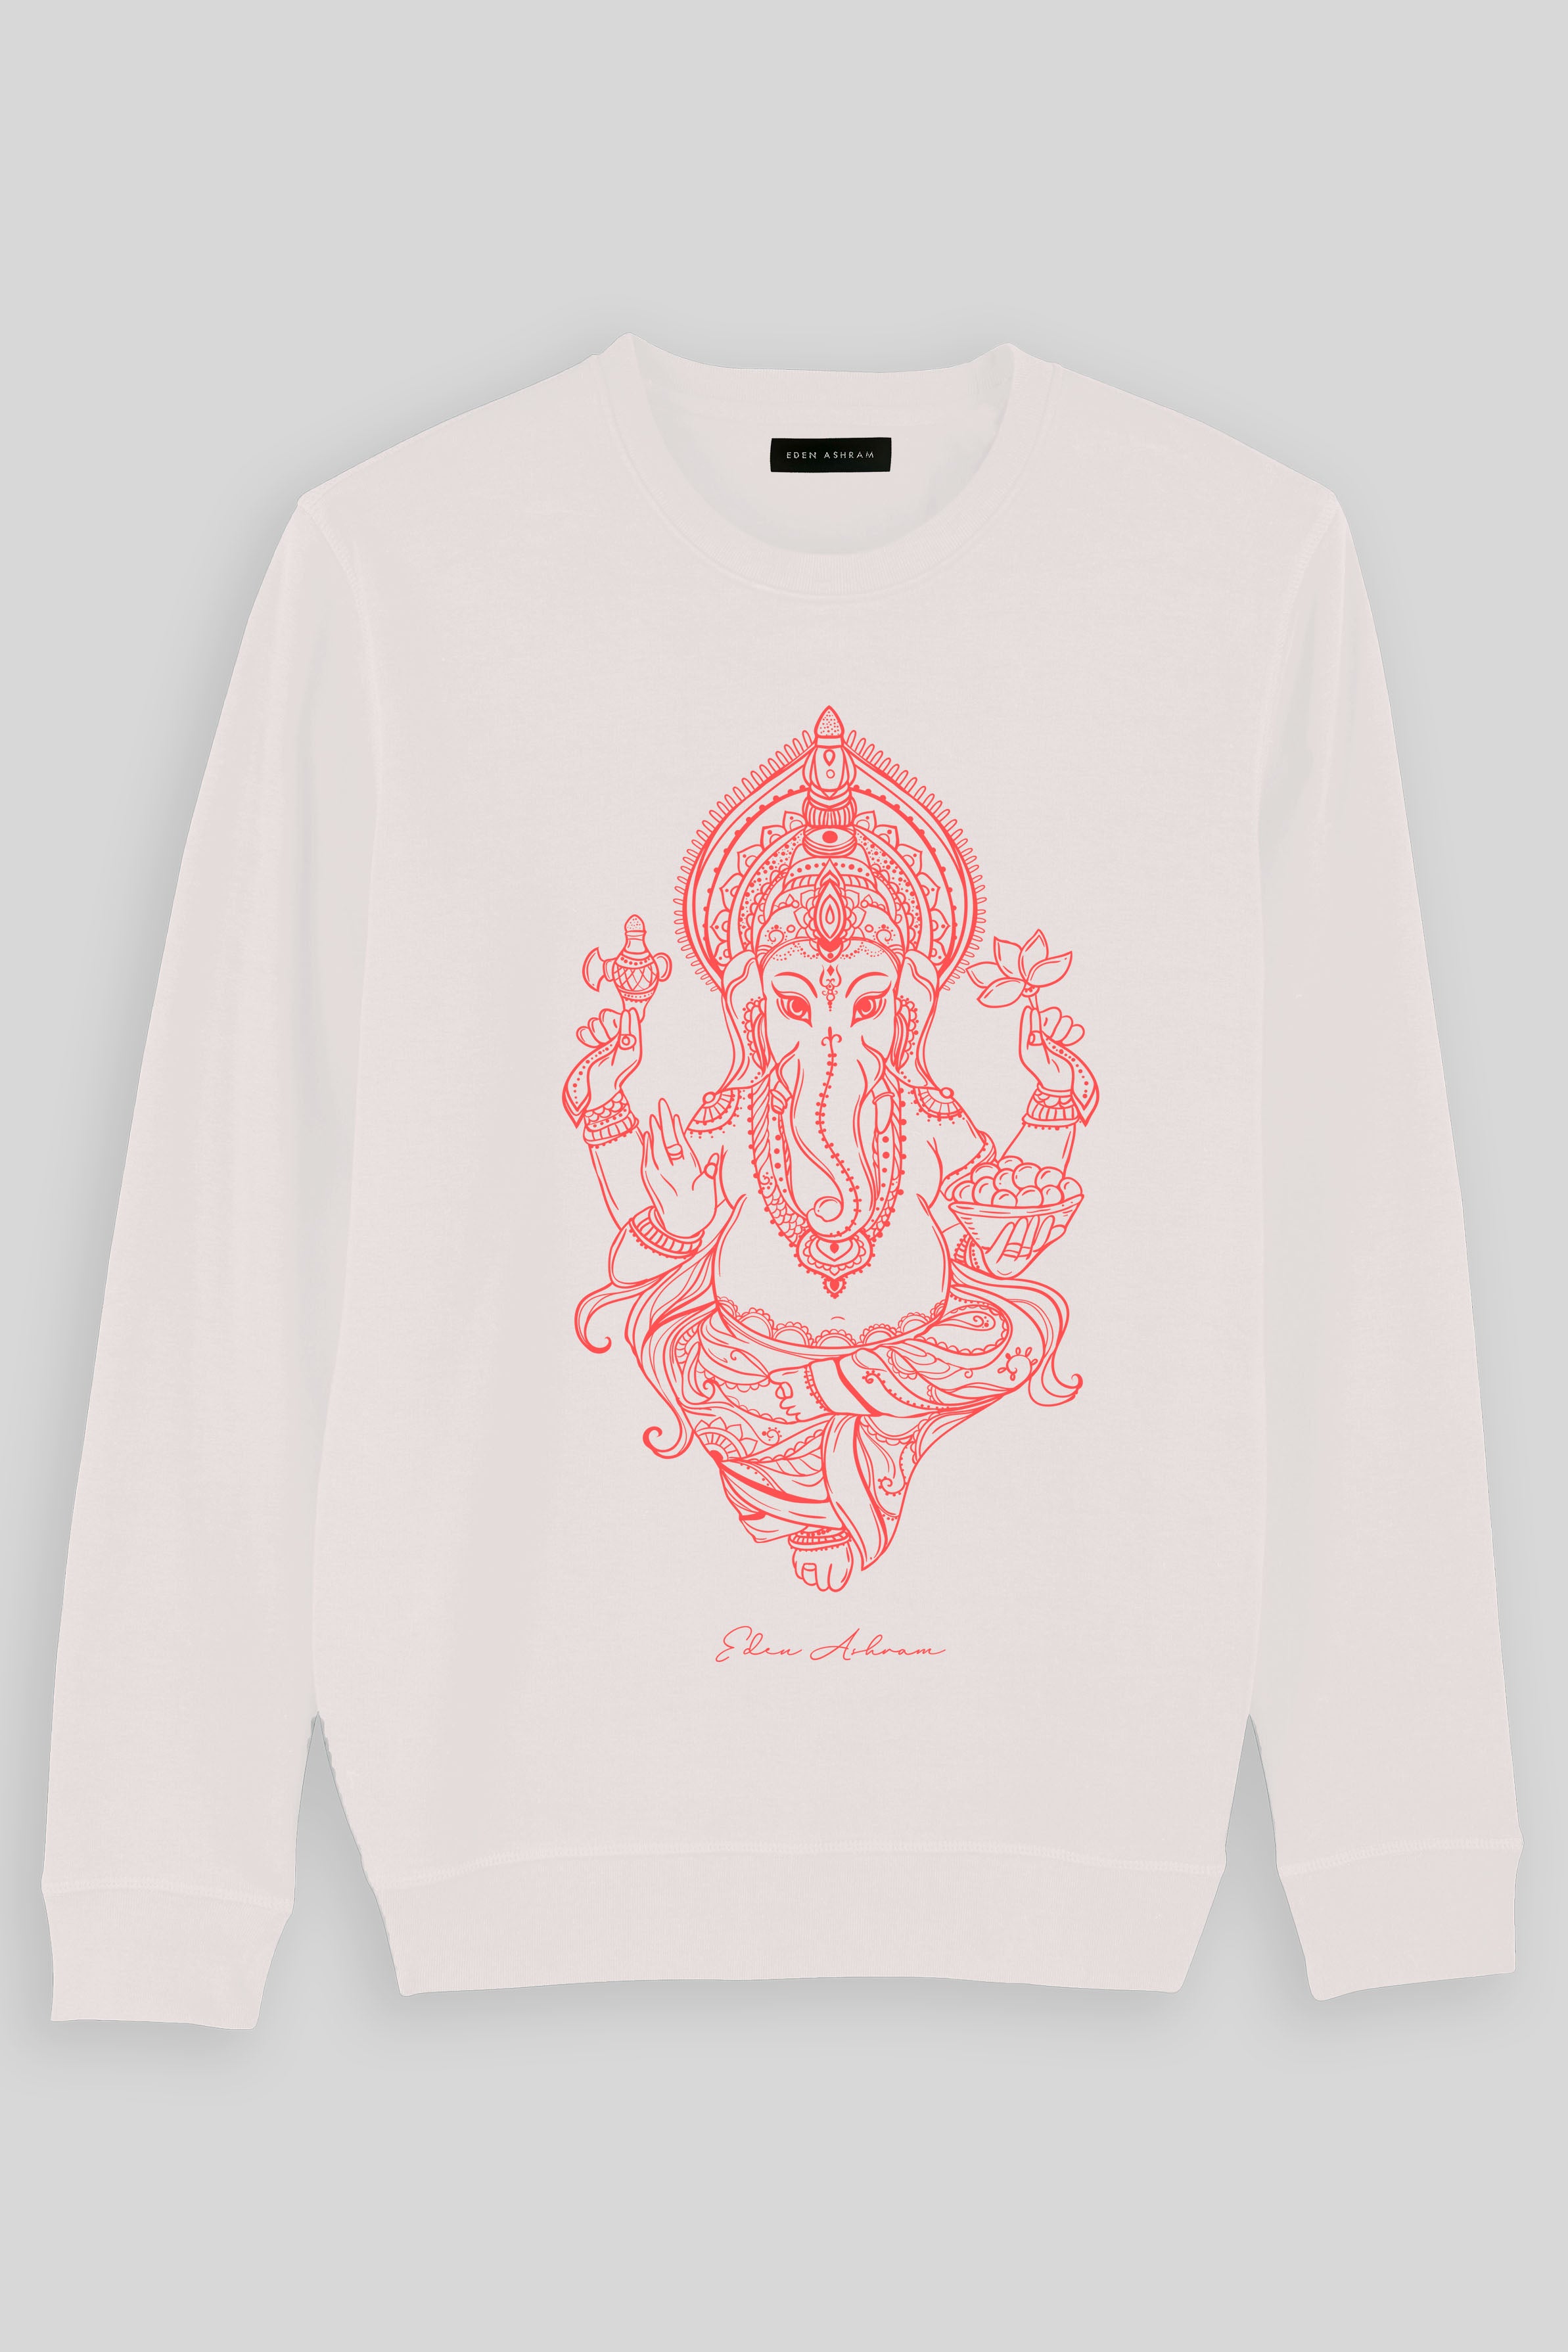 Eden Ashram Ganesha Premium Crew Neck Sweatshirt Vintage White